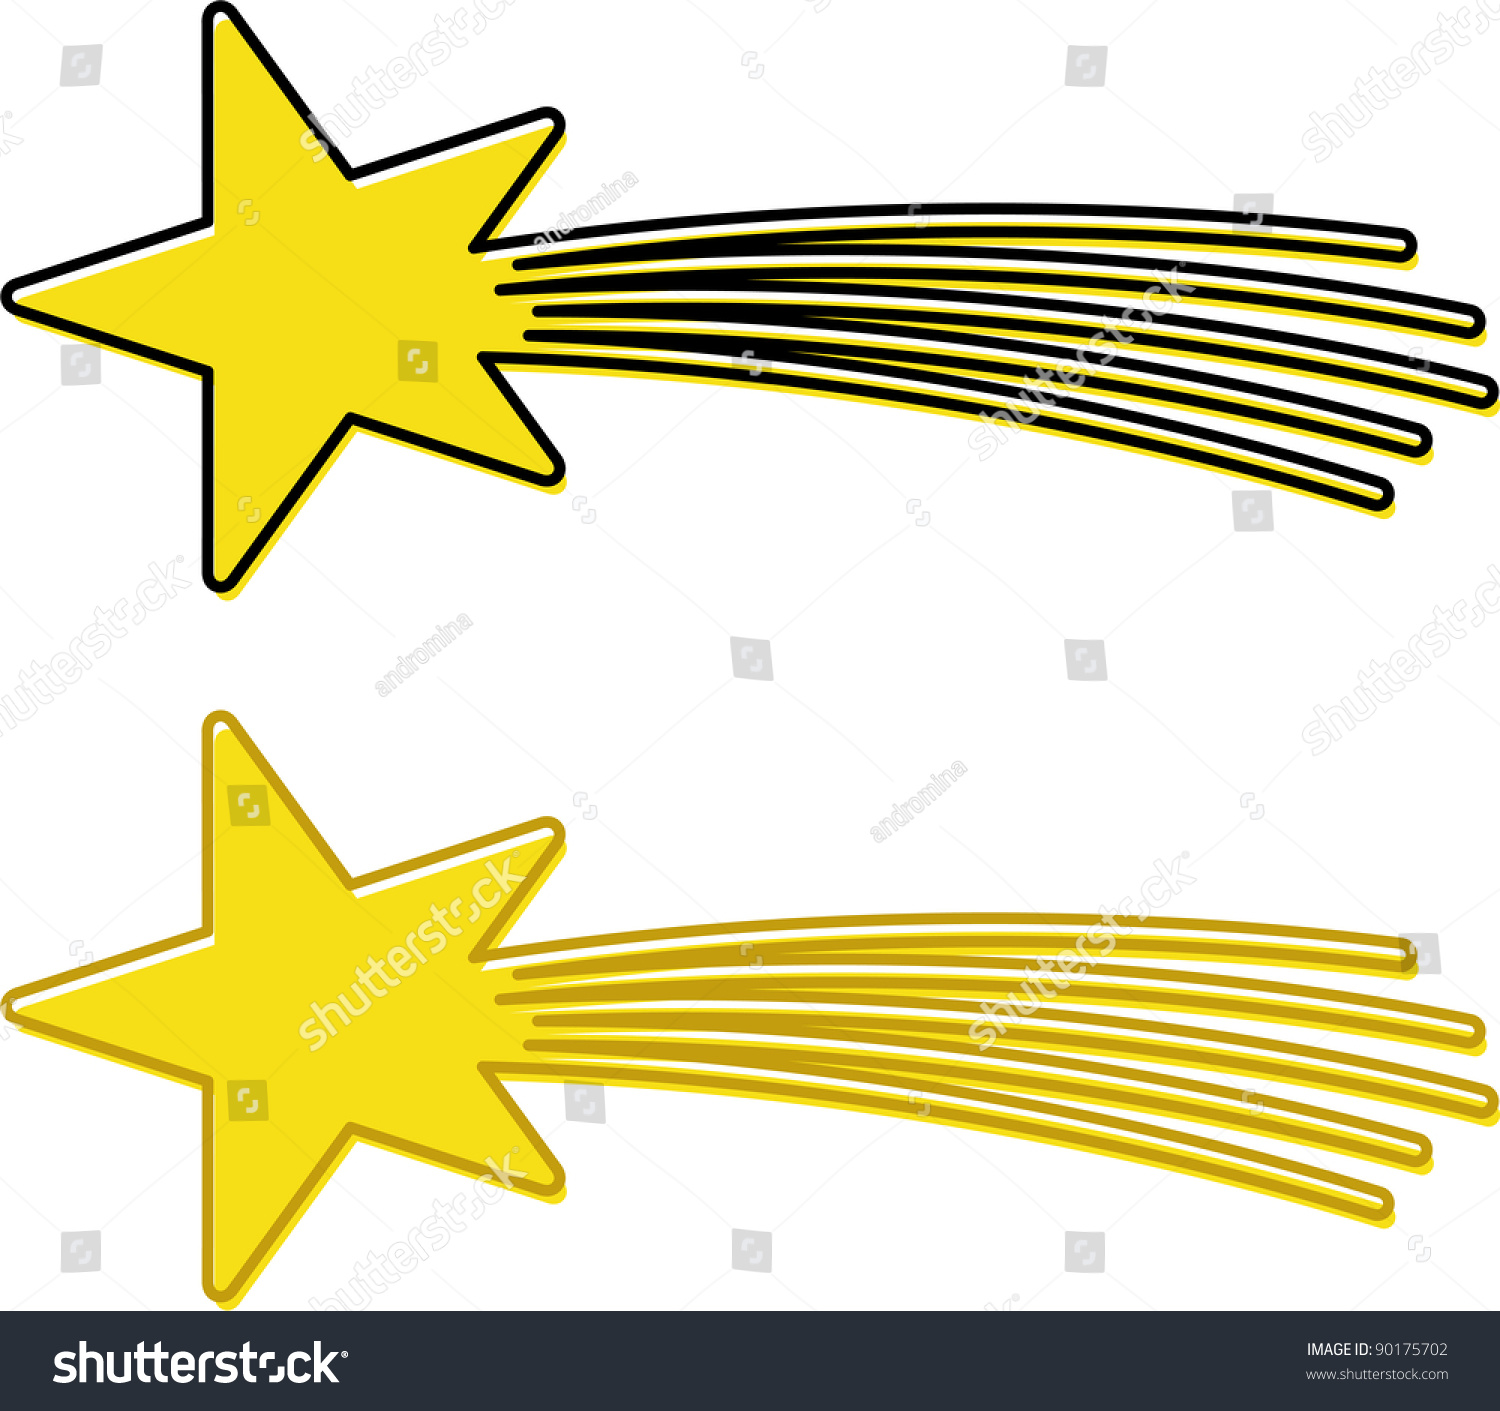 Eastern Star Stock Vector Illustration 90175702 : Shutterstock